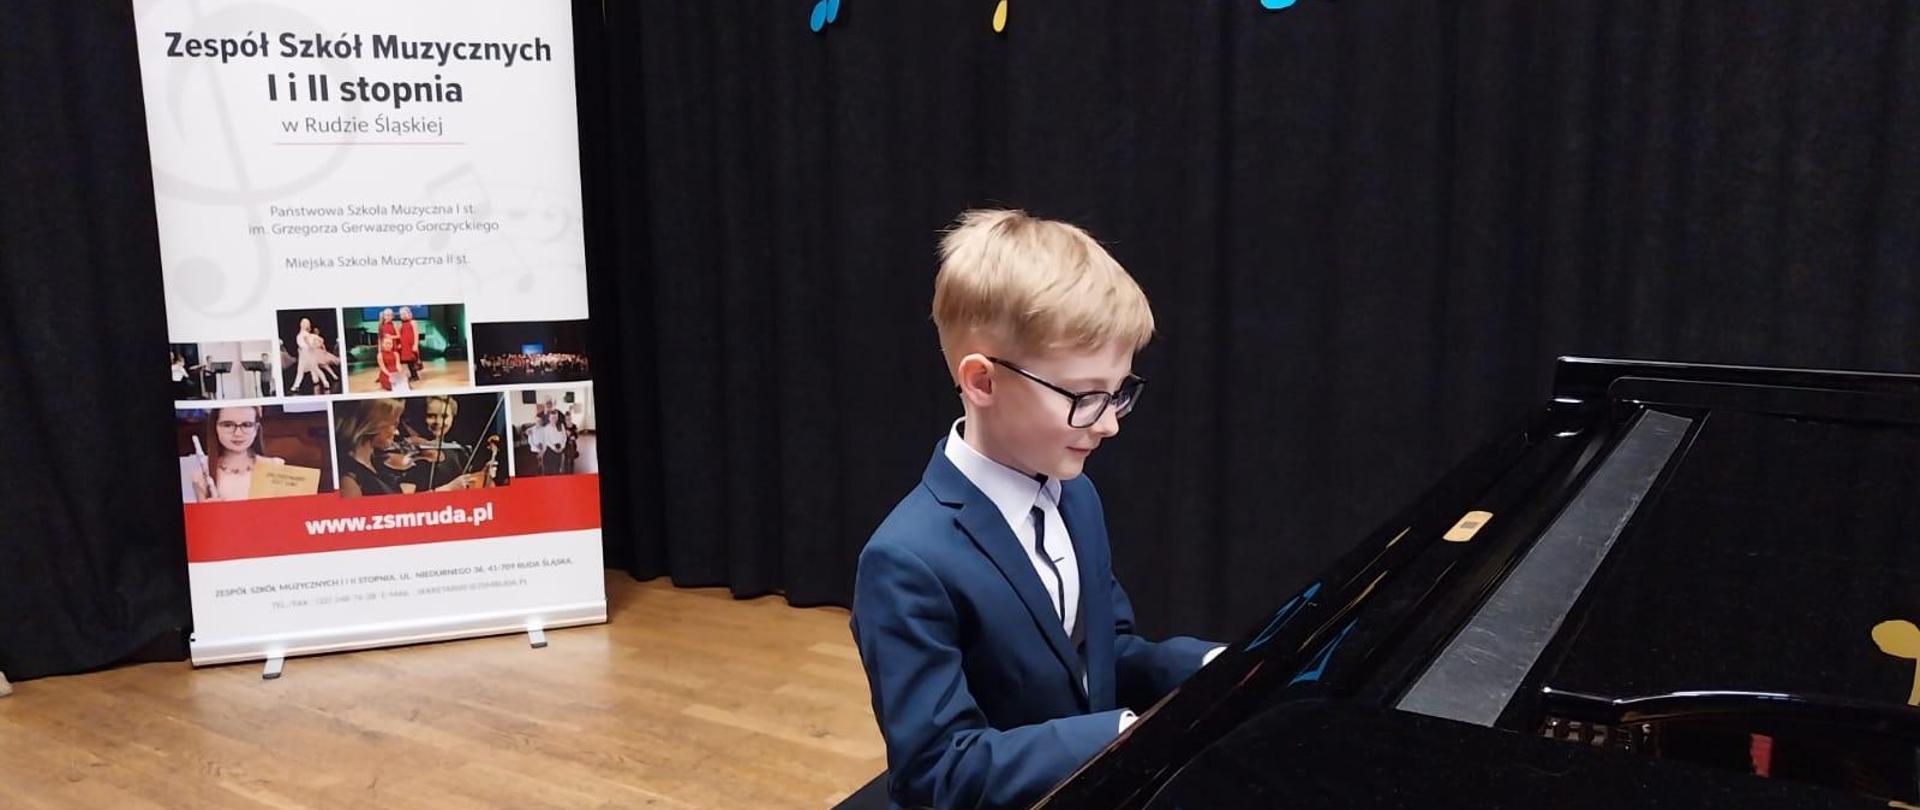 Uczeń gra na fortepianie, w tle baner PSM I i II sopnia w Rudzie Śląskiej